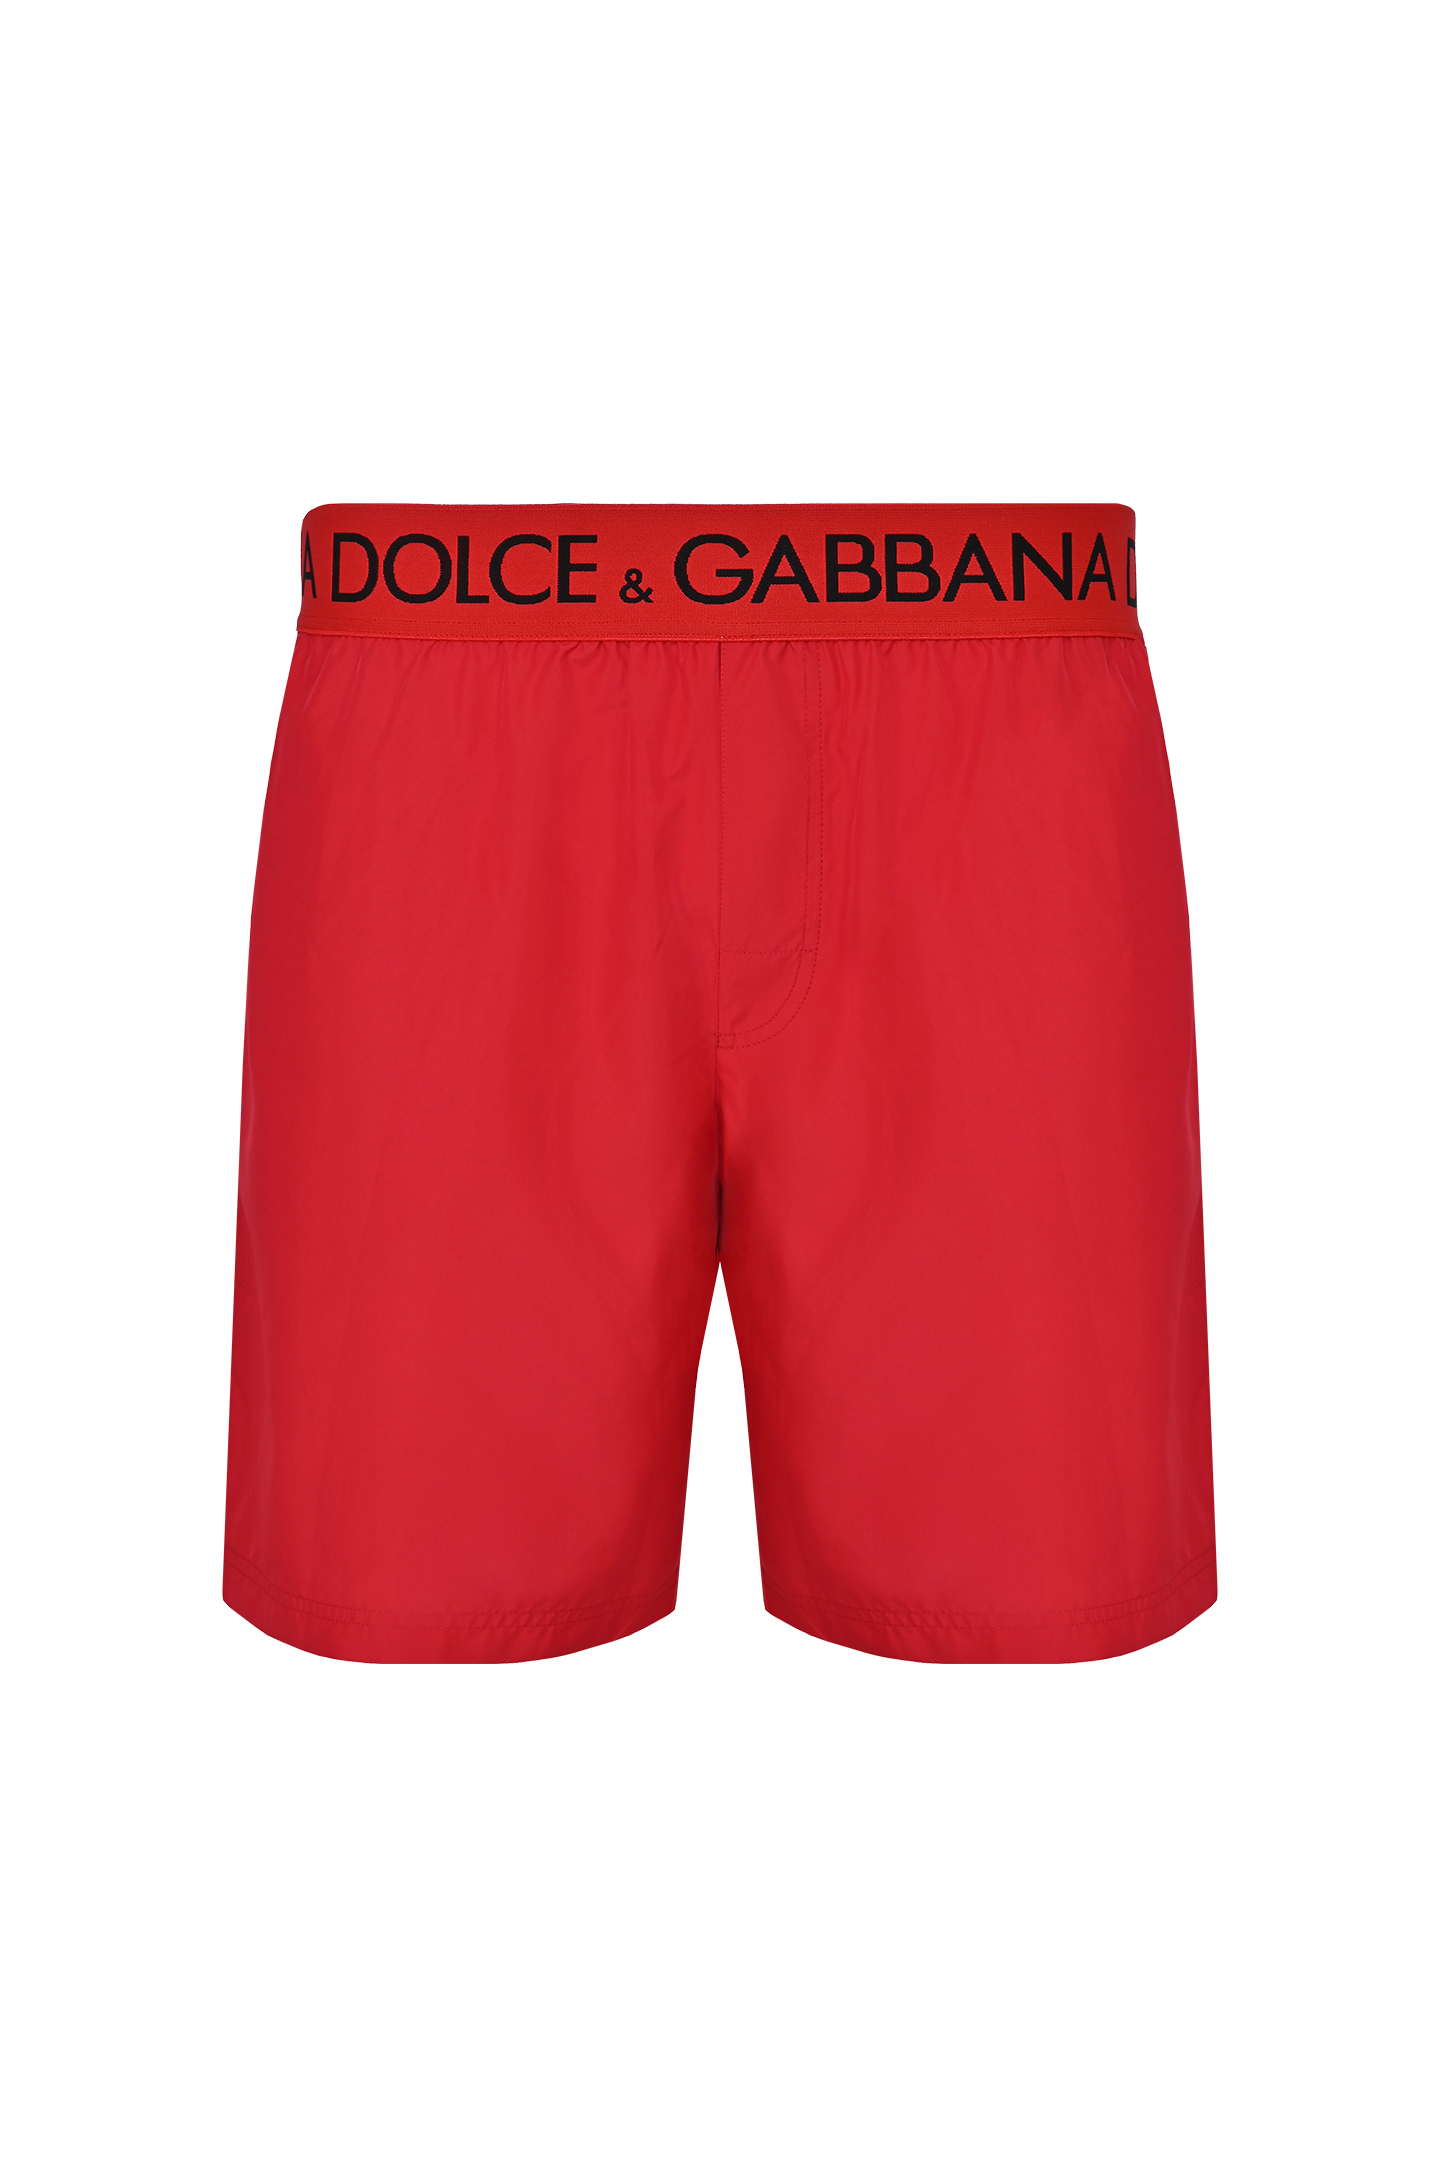 Плавки-шорты DOLCE & GABBANA M4B45T FUSFW, цвет: Красный, Мужской